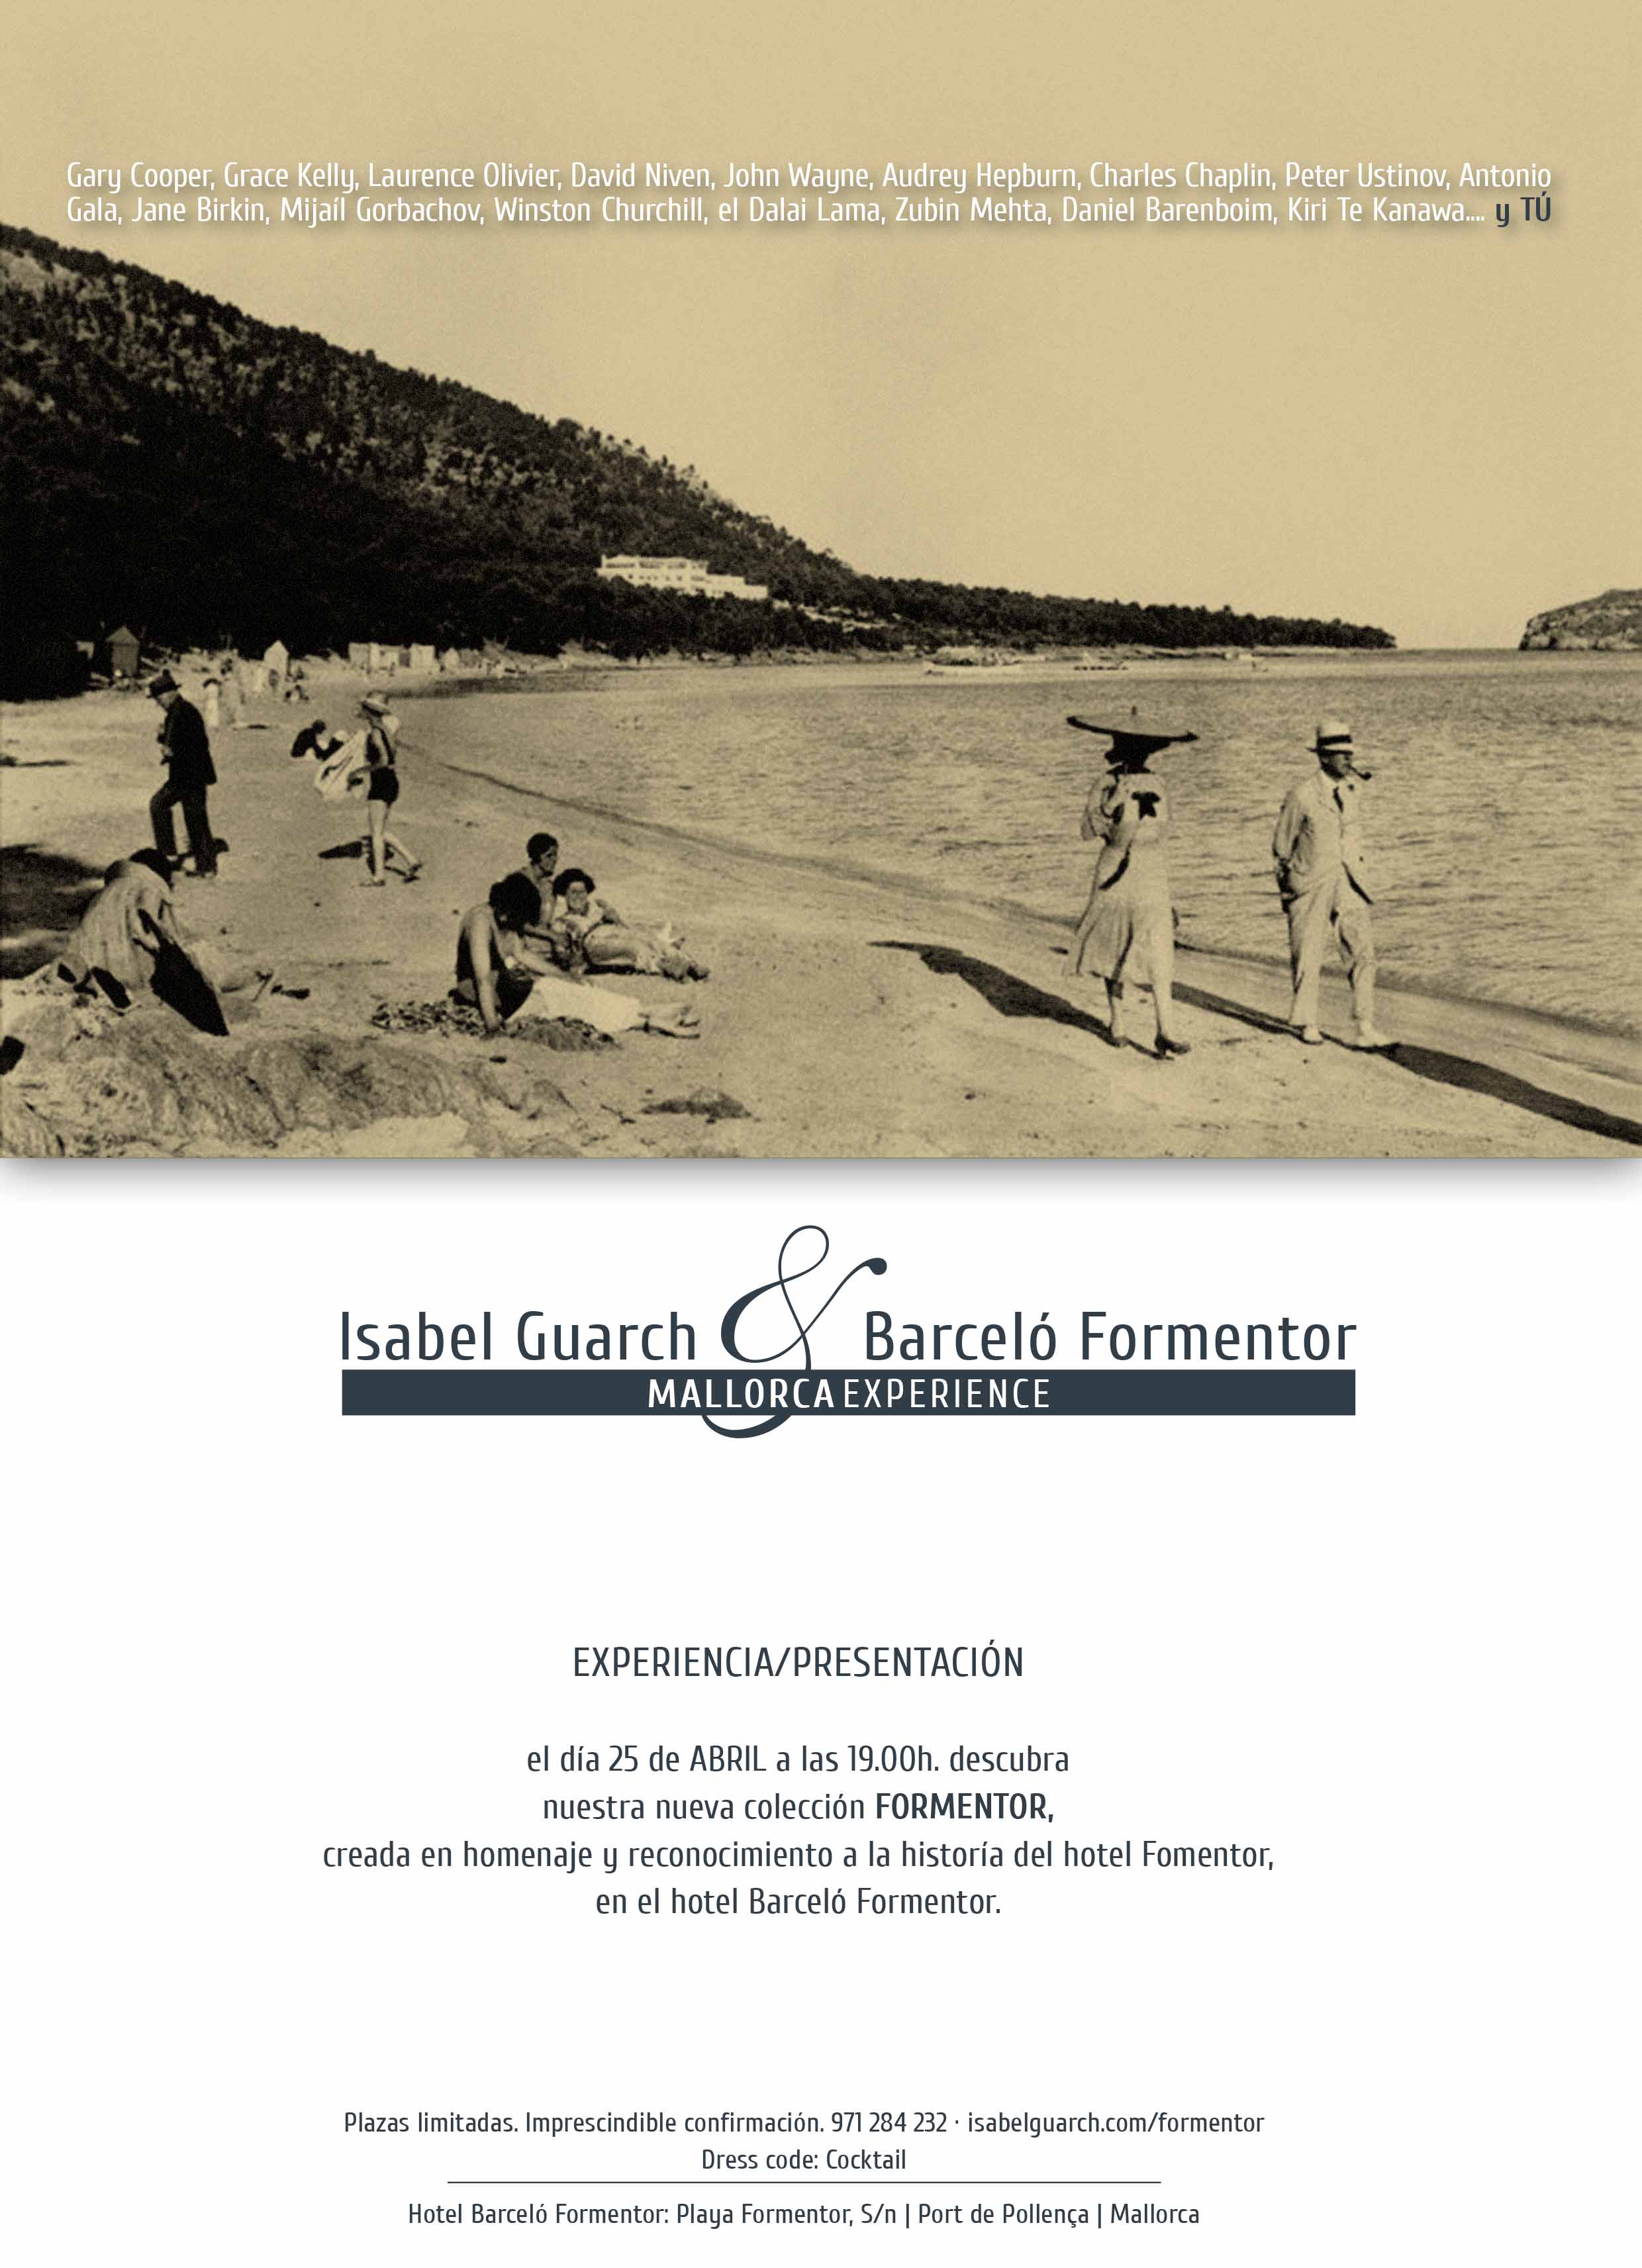 Presentación de la colección Formentor en Hotel Barceló Formentor